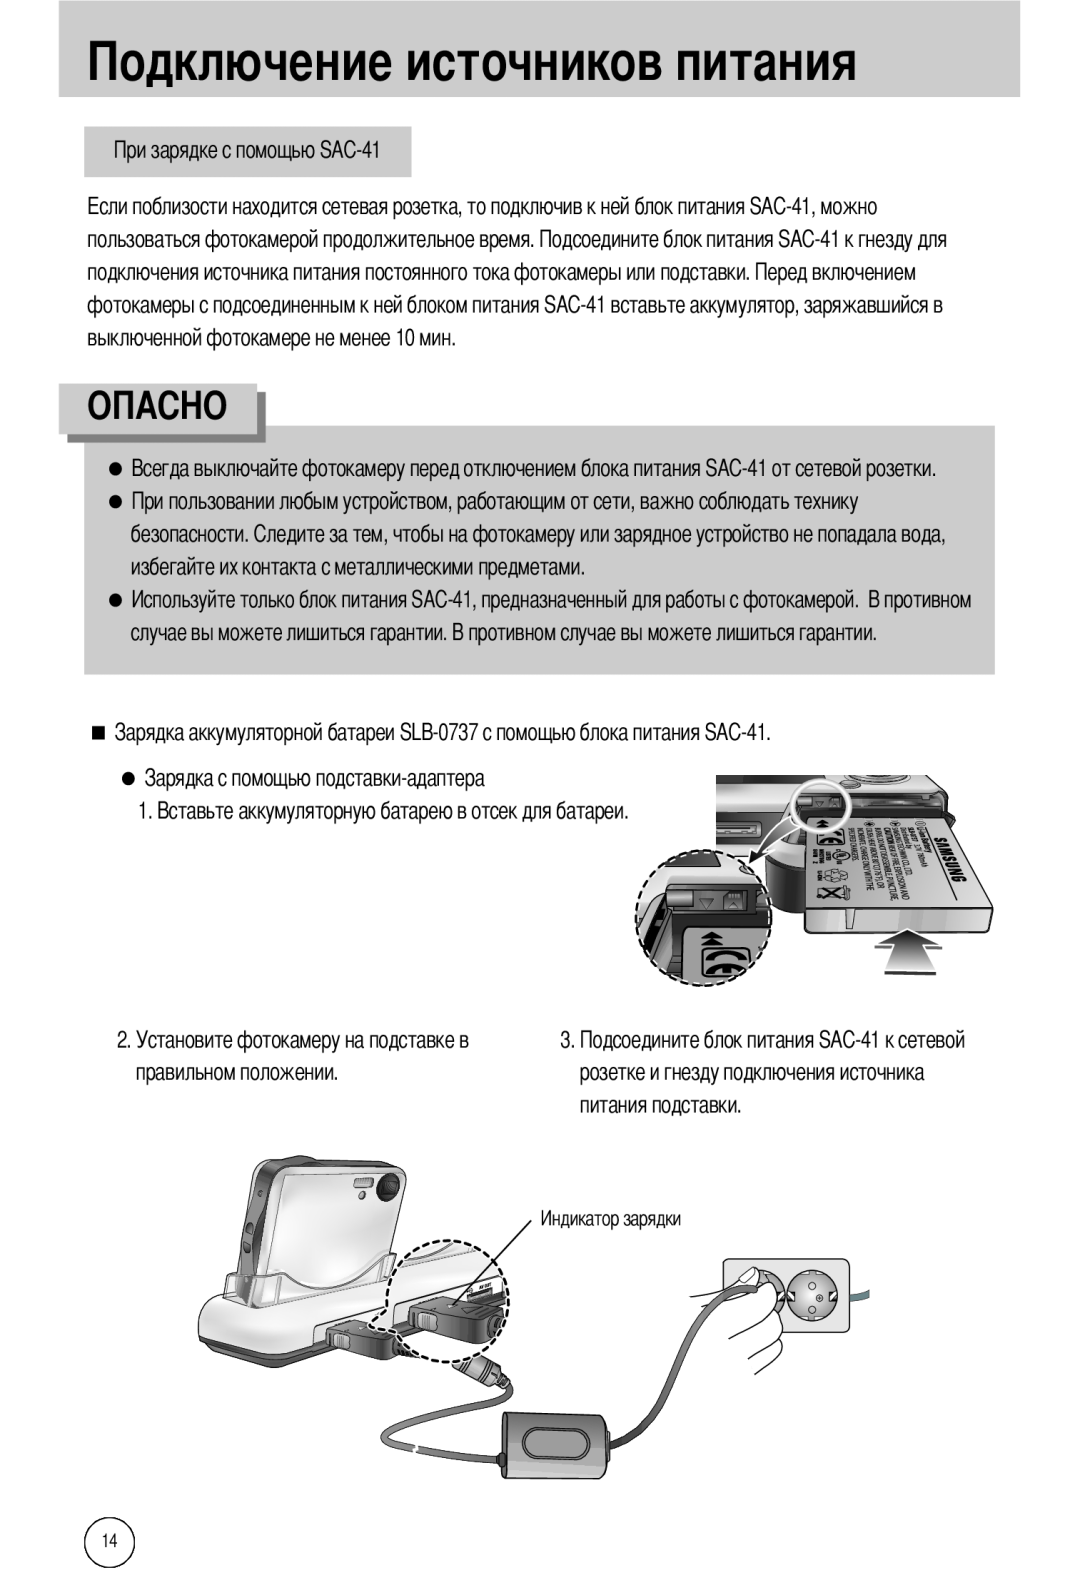 Samsung EC-I50ZZBBA/FR, EC-I50ZZRBA/FR, EC-I50ZZSBA/AS manual пользоваться фотокамерой продолжительное время, чников питания 